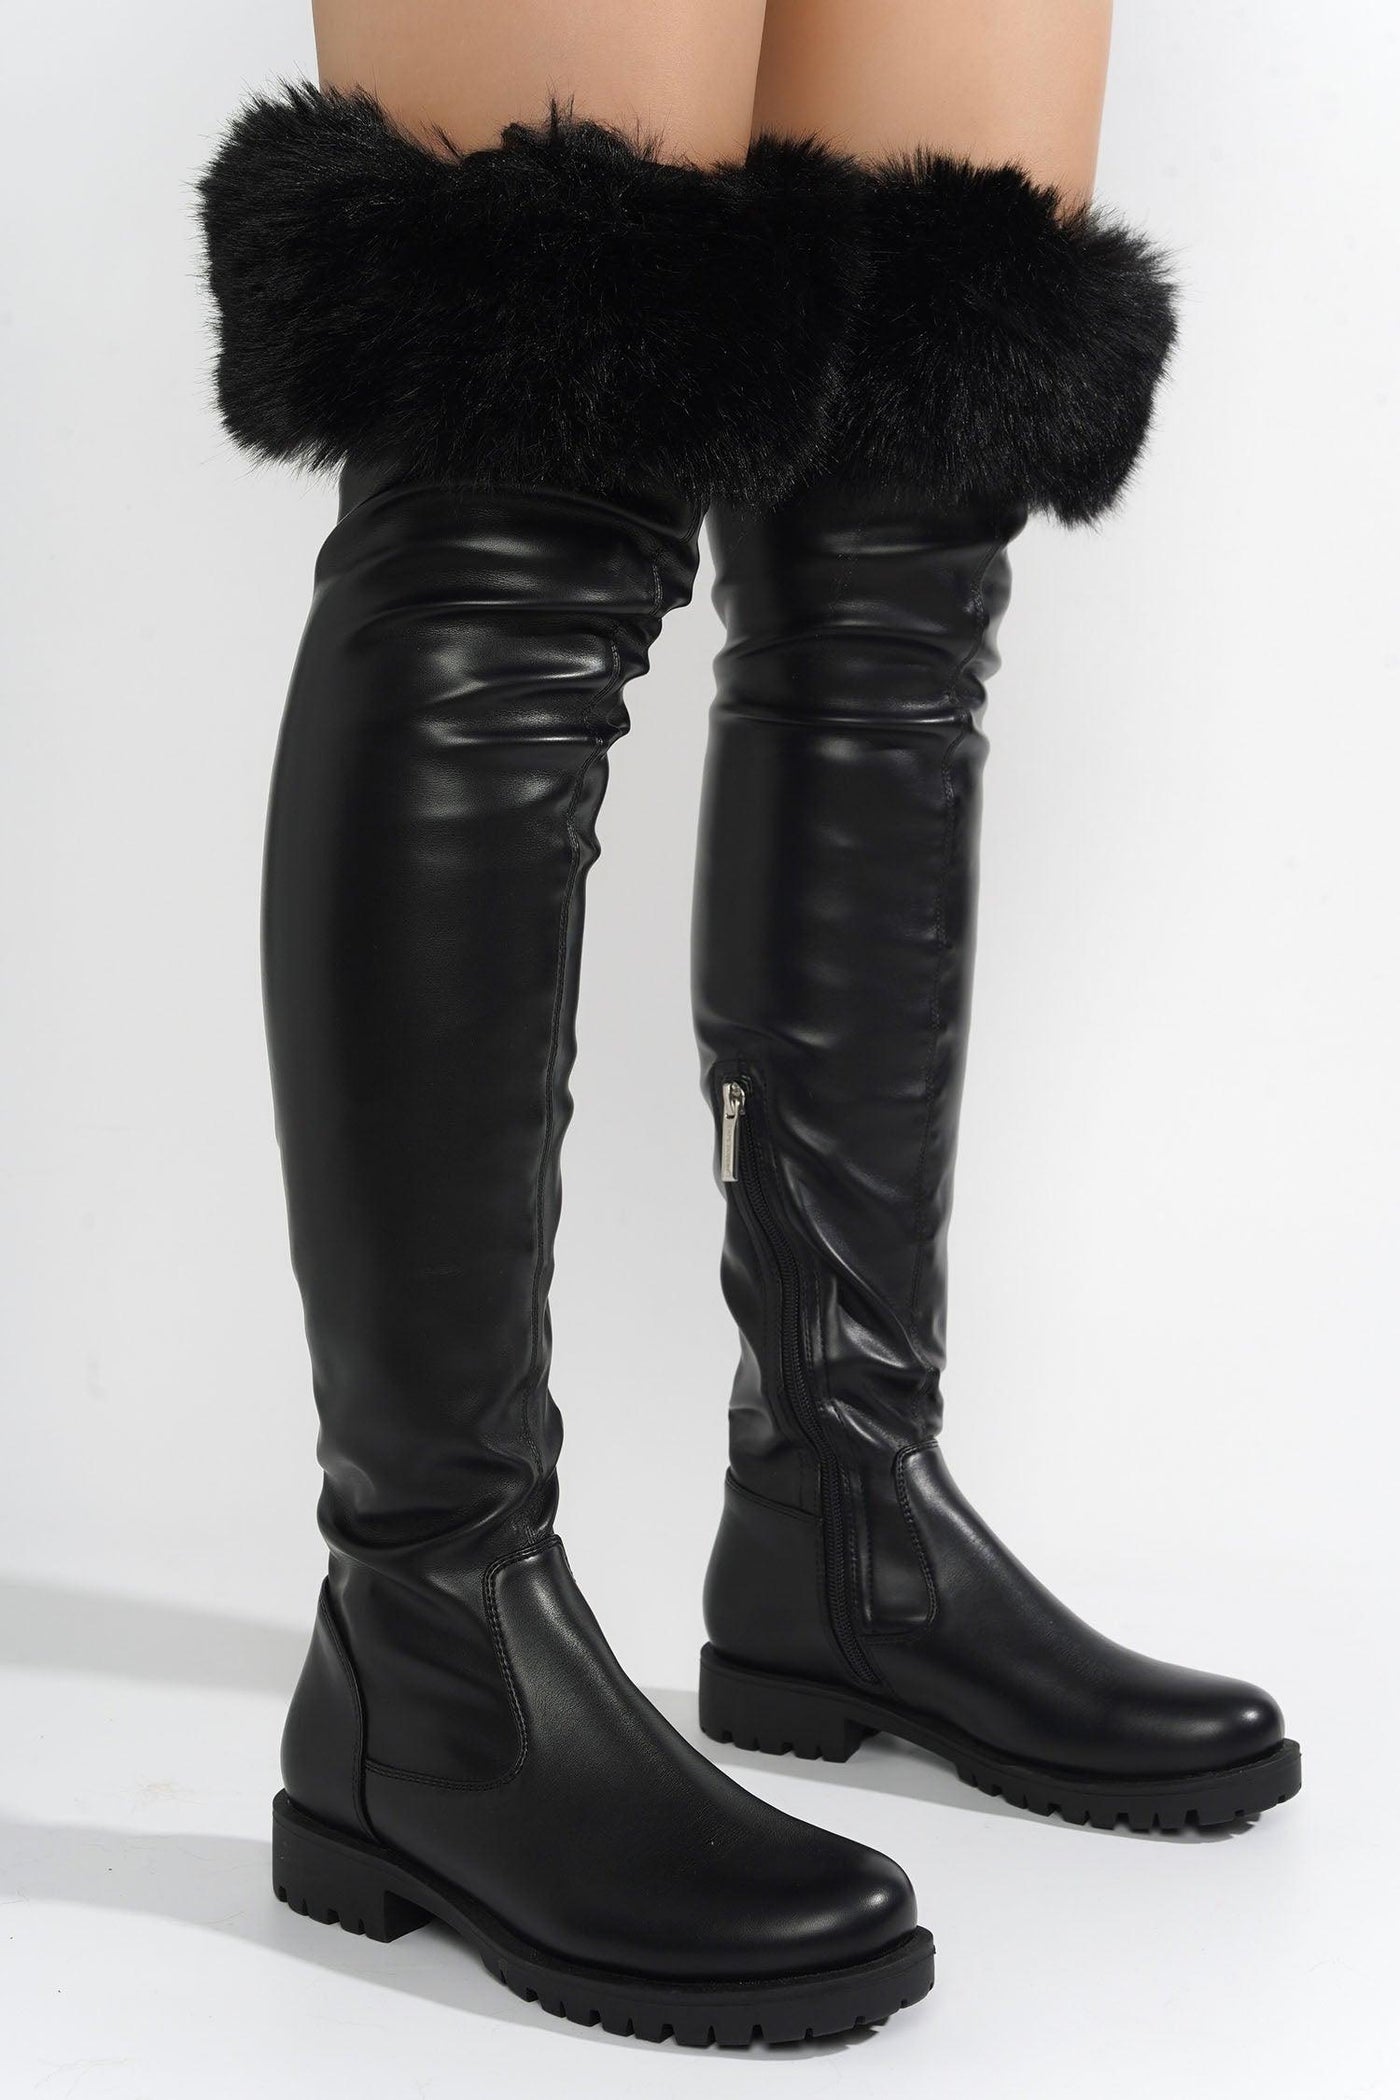 MEGHANI - BLACK Thigh High Boots